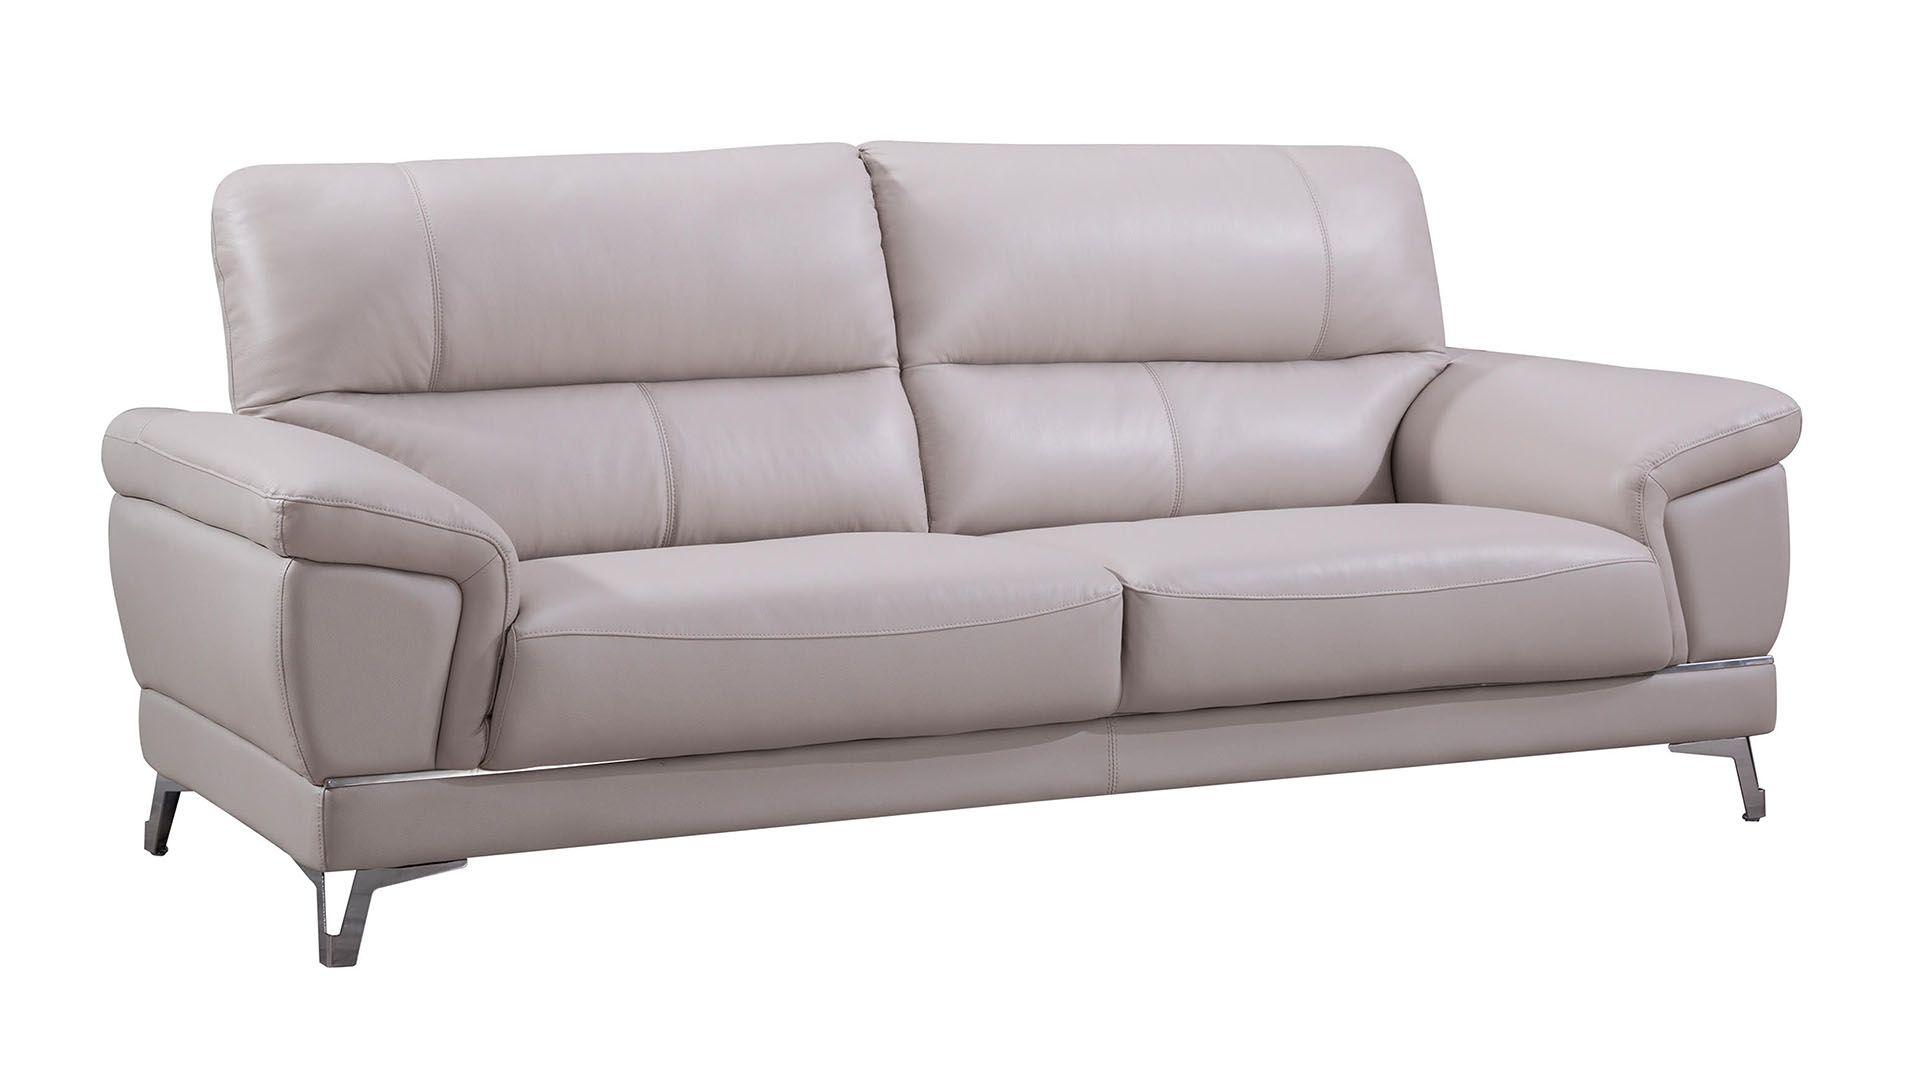 Contemporary, Modern Sofa EK151-LG-SF EK151-LG-SF in Light Gray Italian Leather